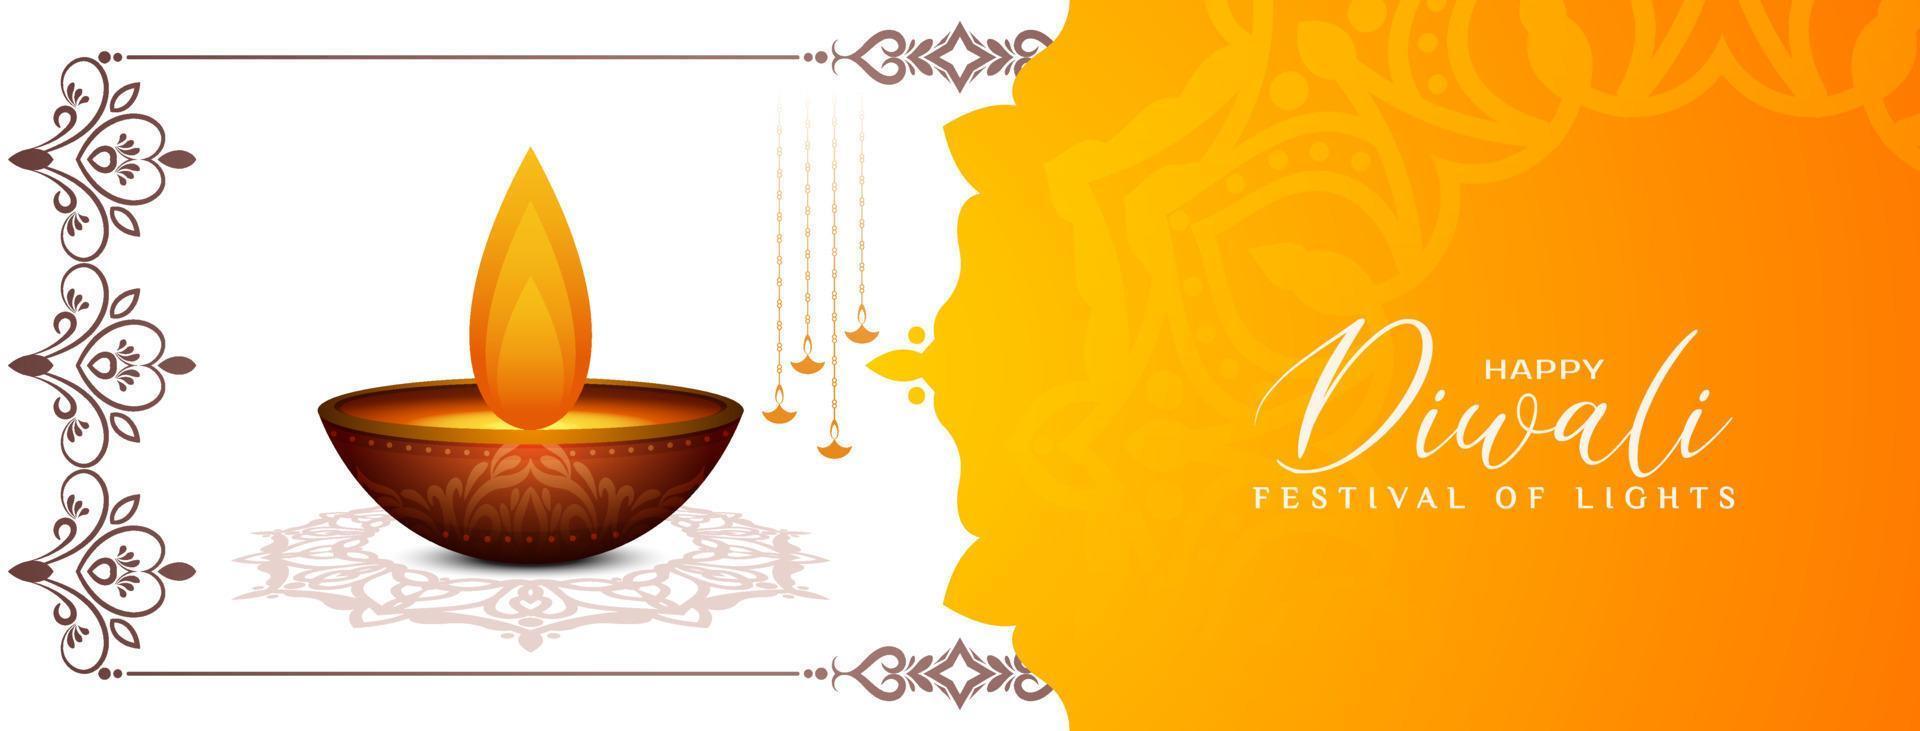 hermoso feliz diwali festival cultural clásico diseño de banner vector